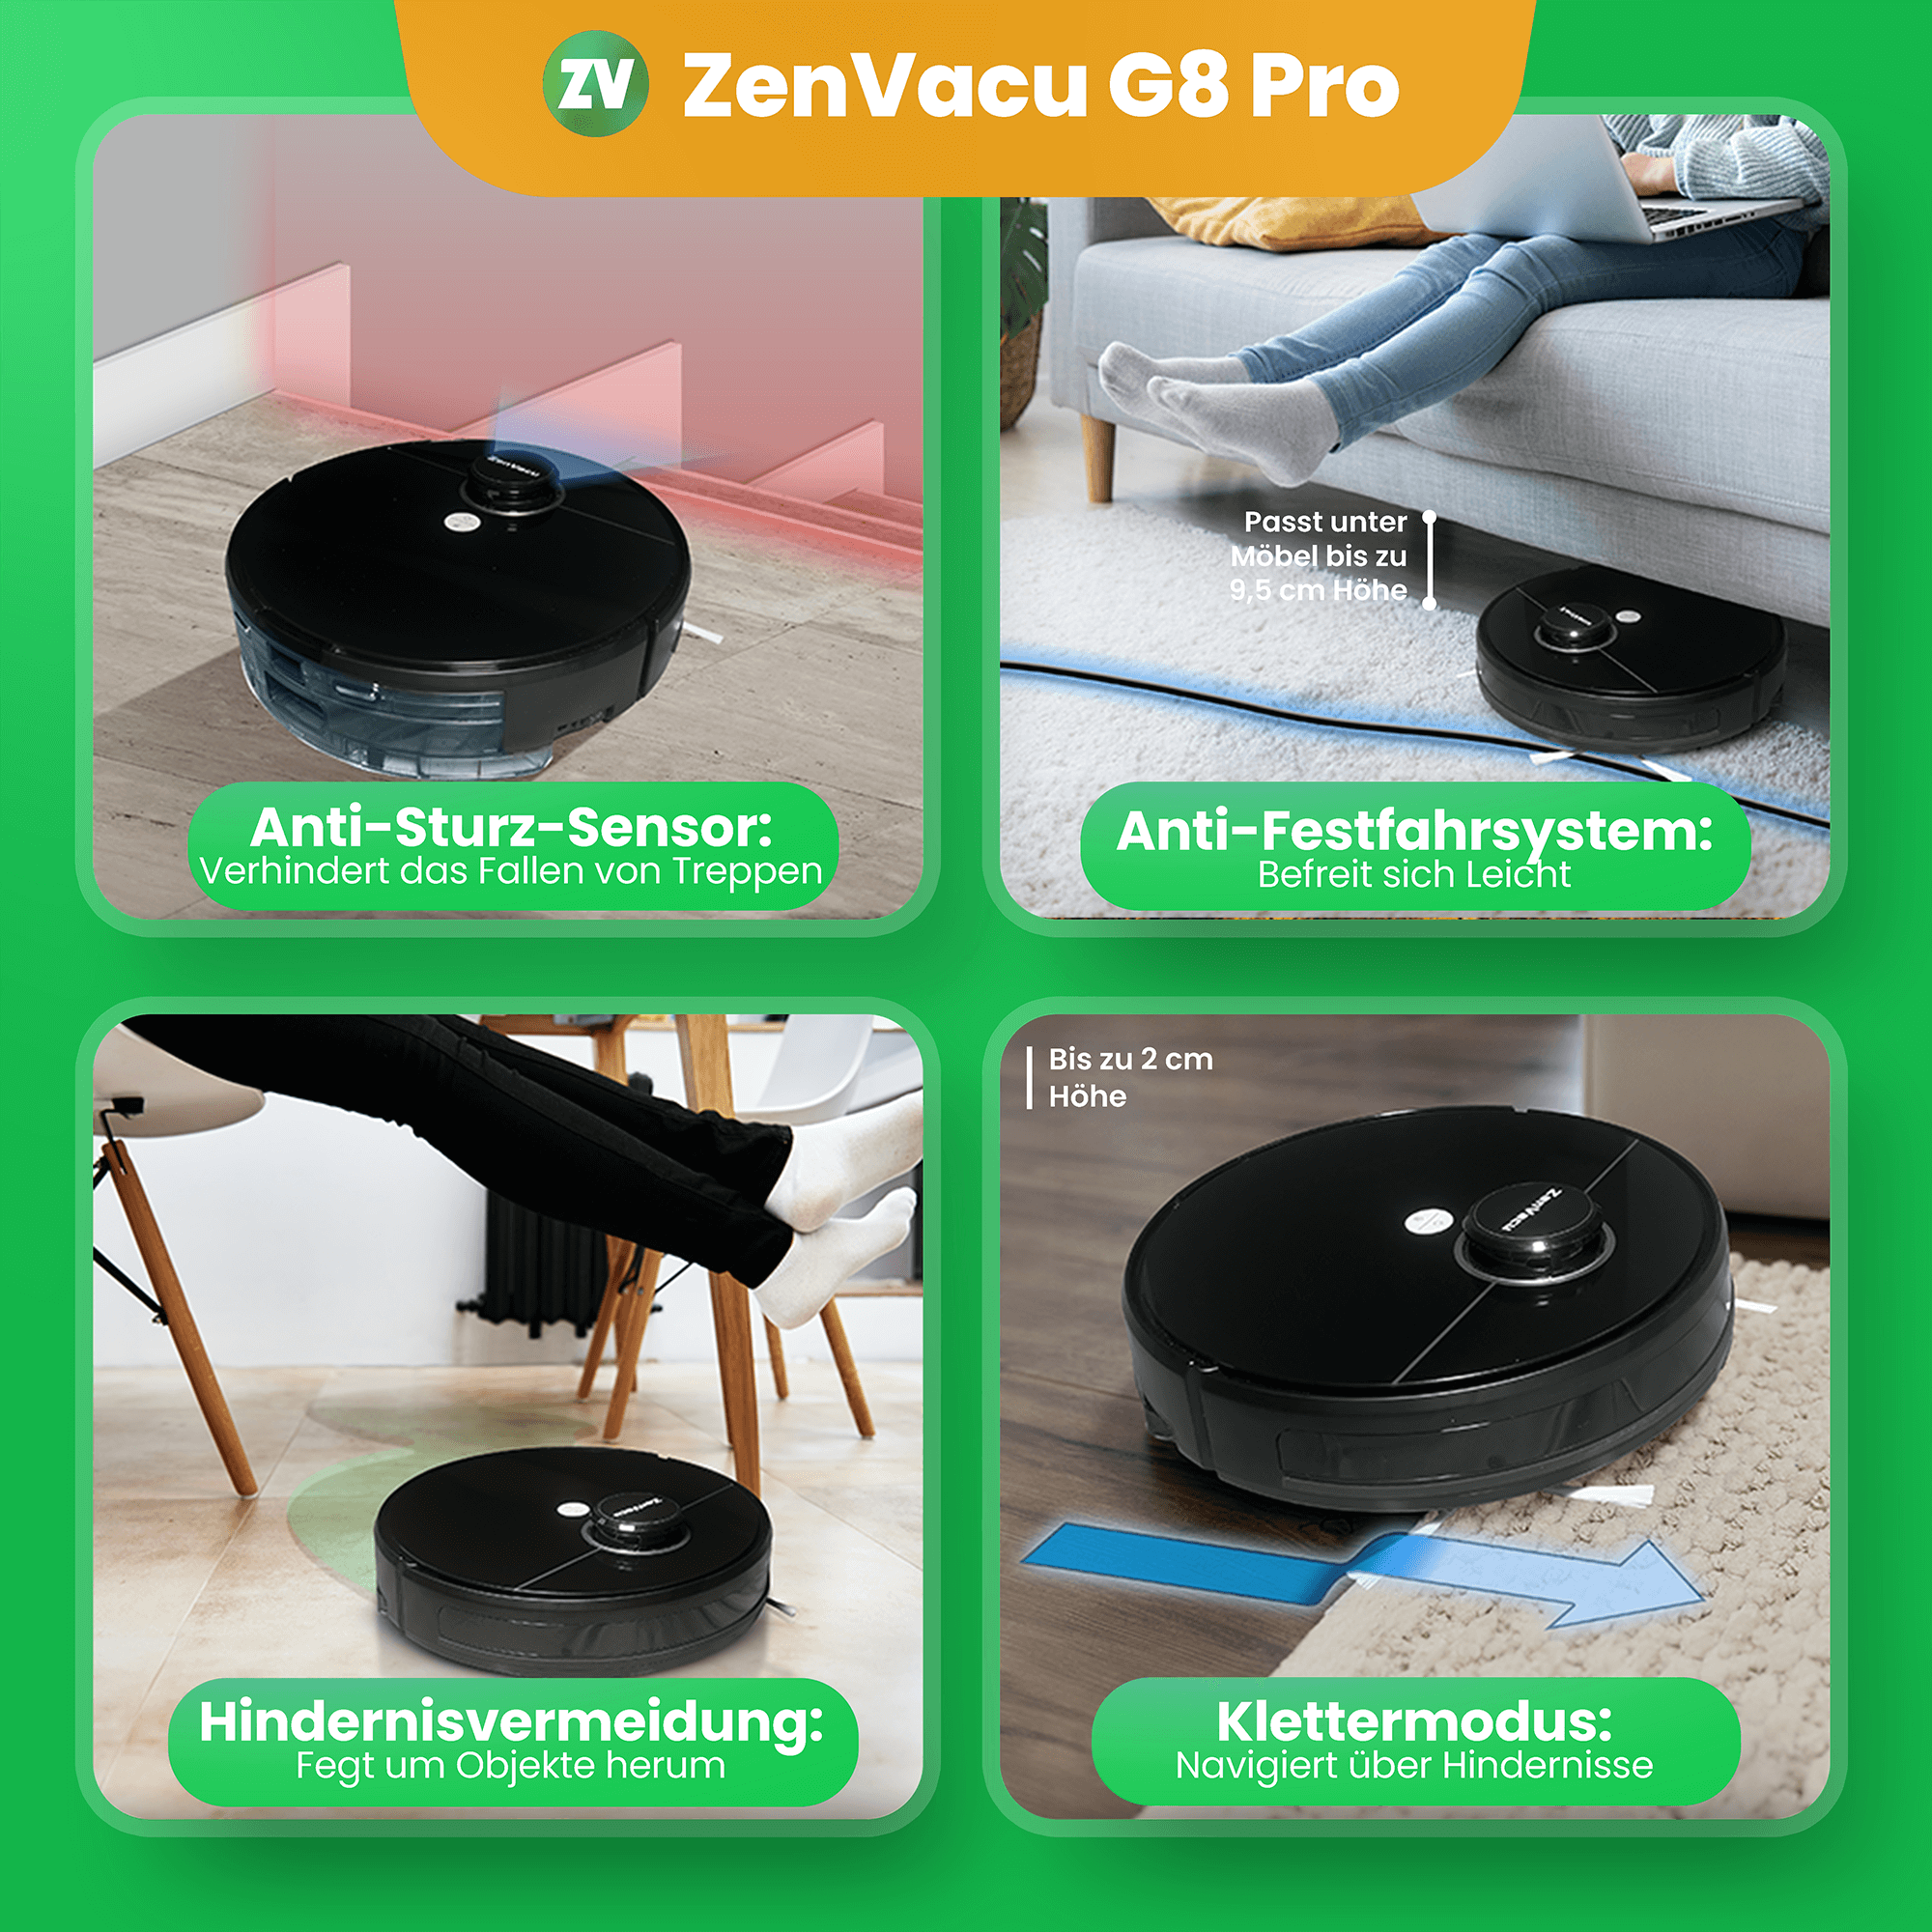 ZenVacu G8 Pro: Fortschrittliche Sicherheitssysteme, Anti-Sturz-Sensor, Anti-Blockier-Modus, Hindernisvermeidung und Klettermodus für nahtlose Leistung. Sorgen Sie für die Sicherheit und Effizienz Ihrer Hausreinigung mit diesen hochmodernen Funktionen.